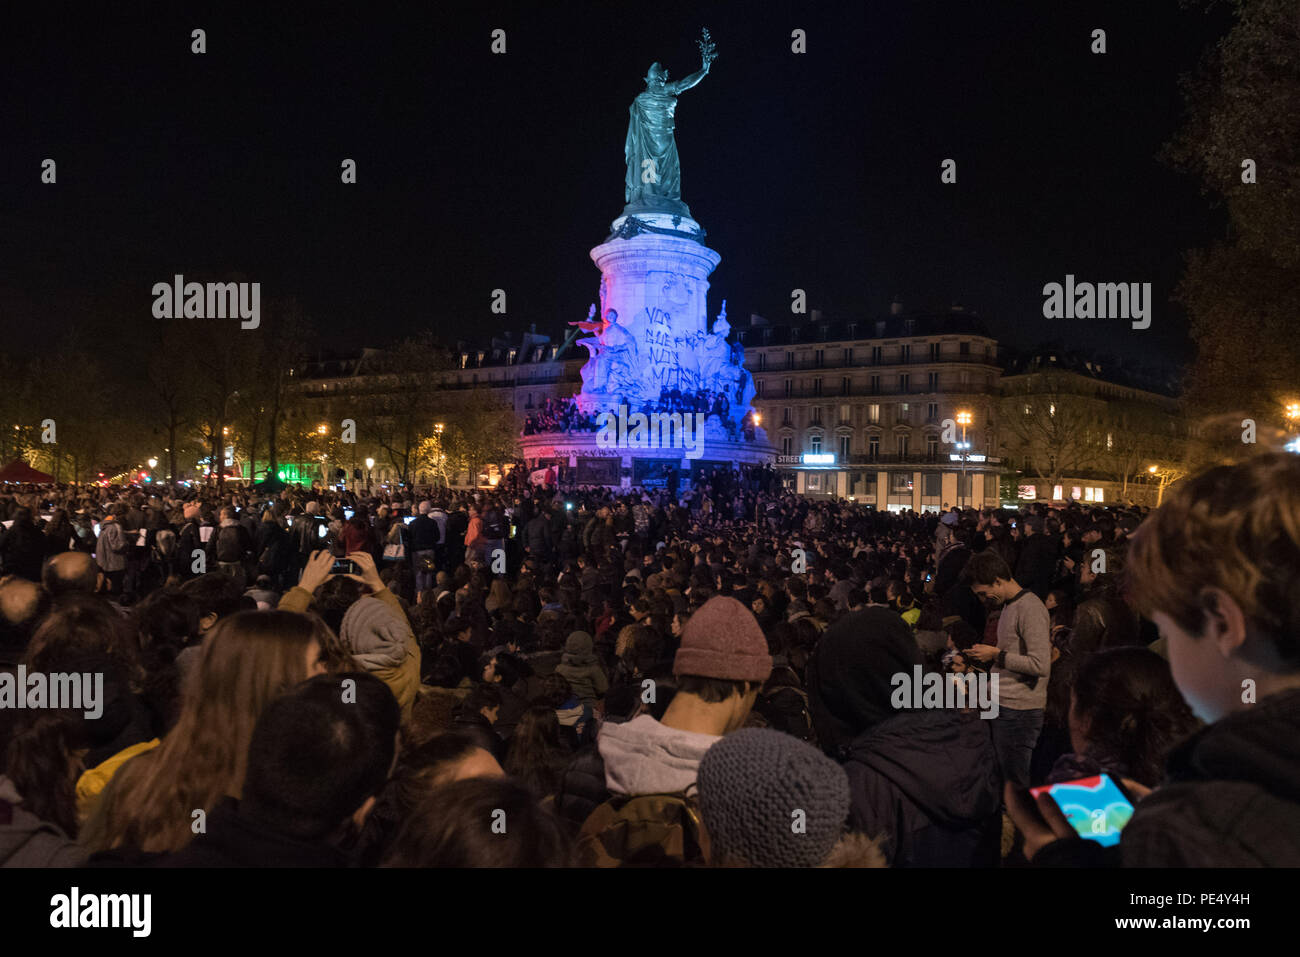 Place de la Republique, Paris, France. 30th April 2016. Thousands of supporters and protesters gather in the Place de la Republique in the centre of P Stock Photo